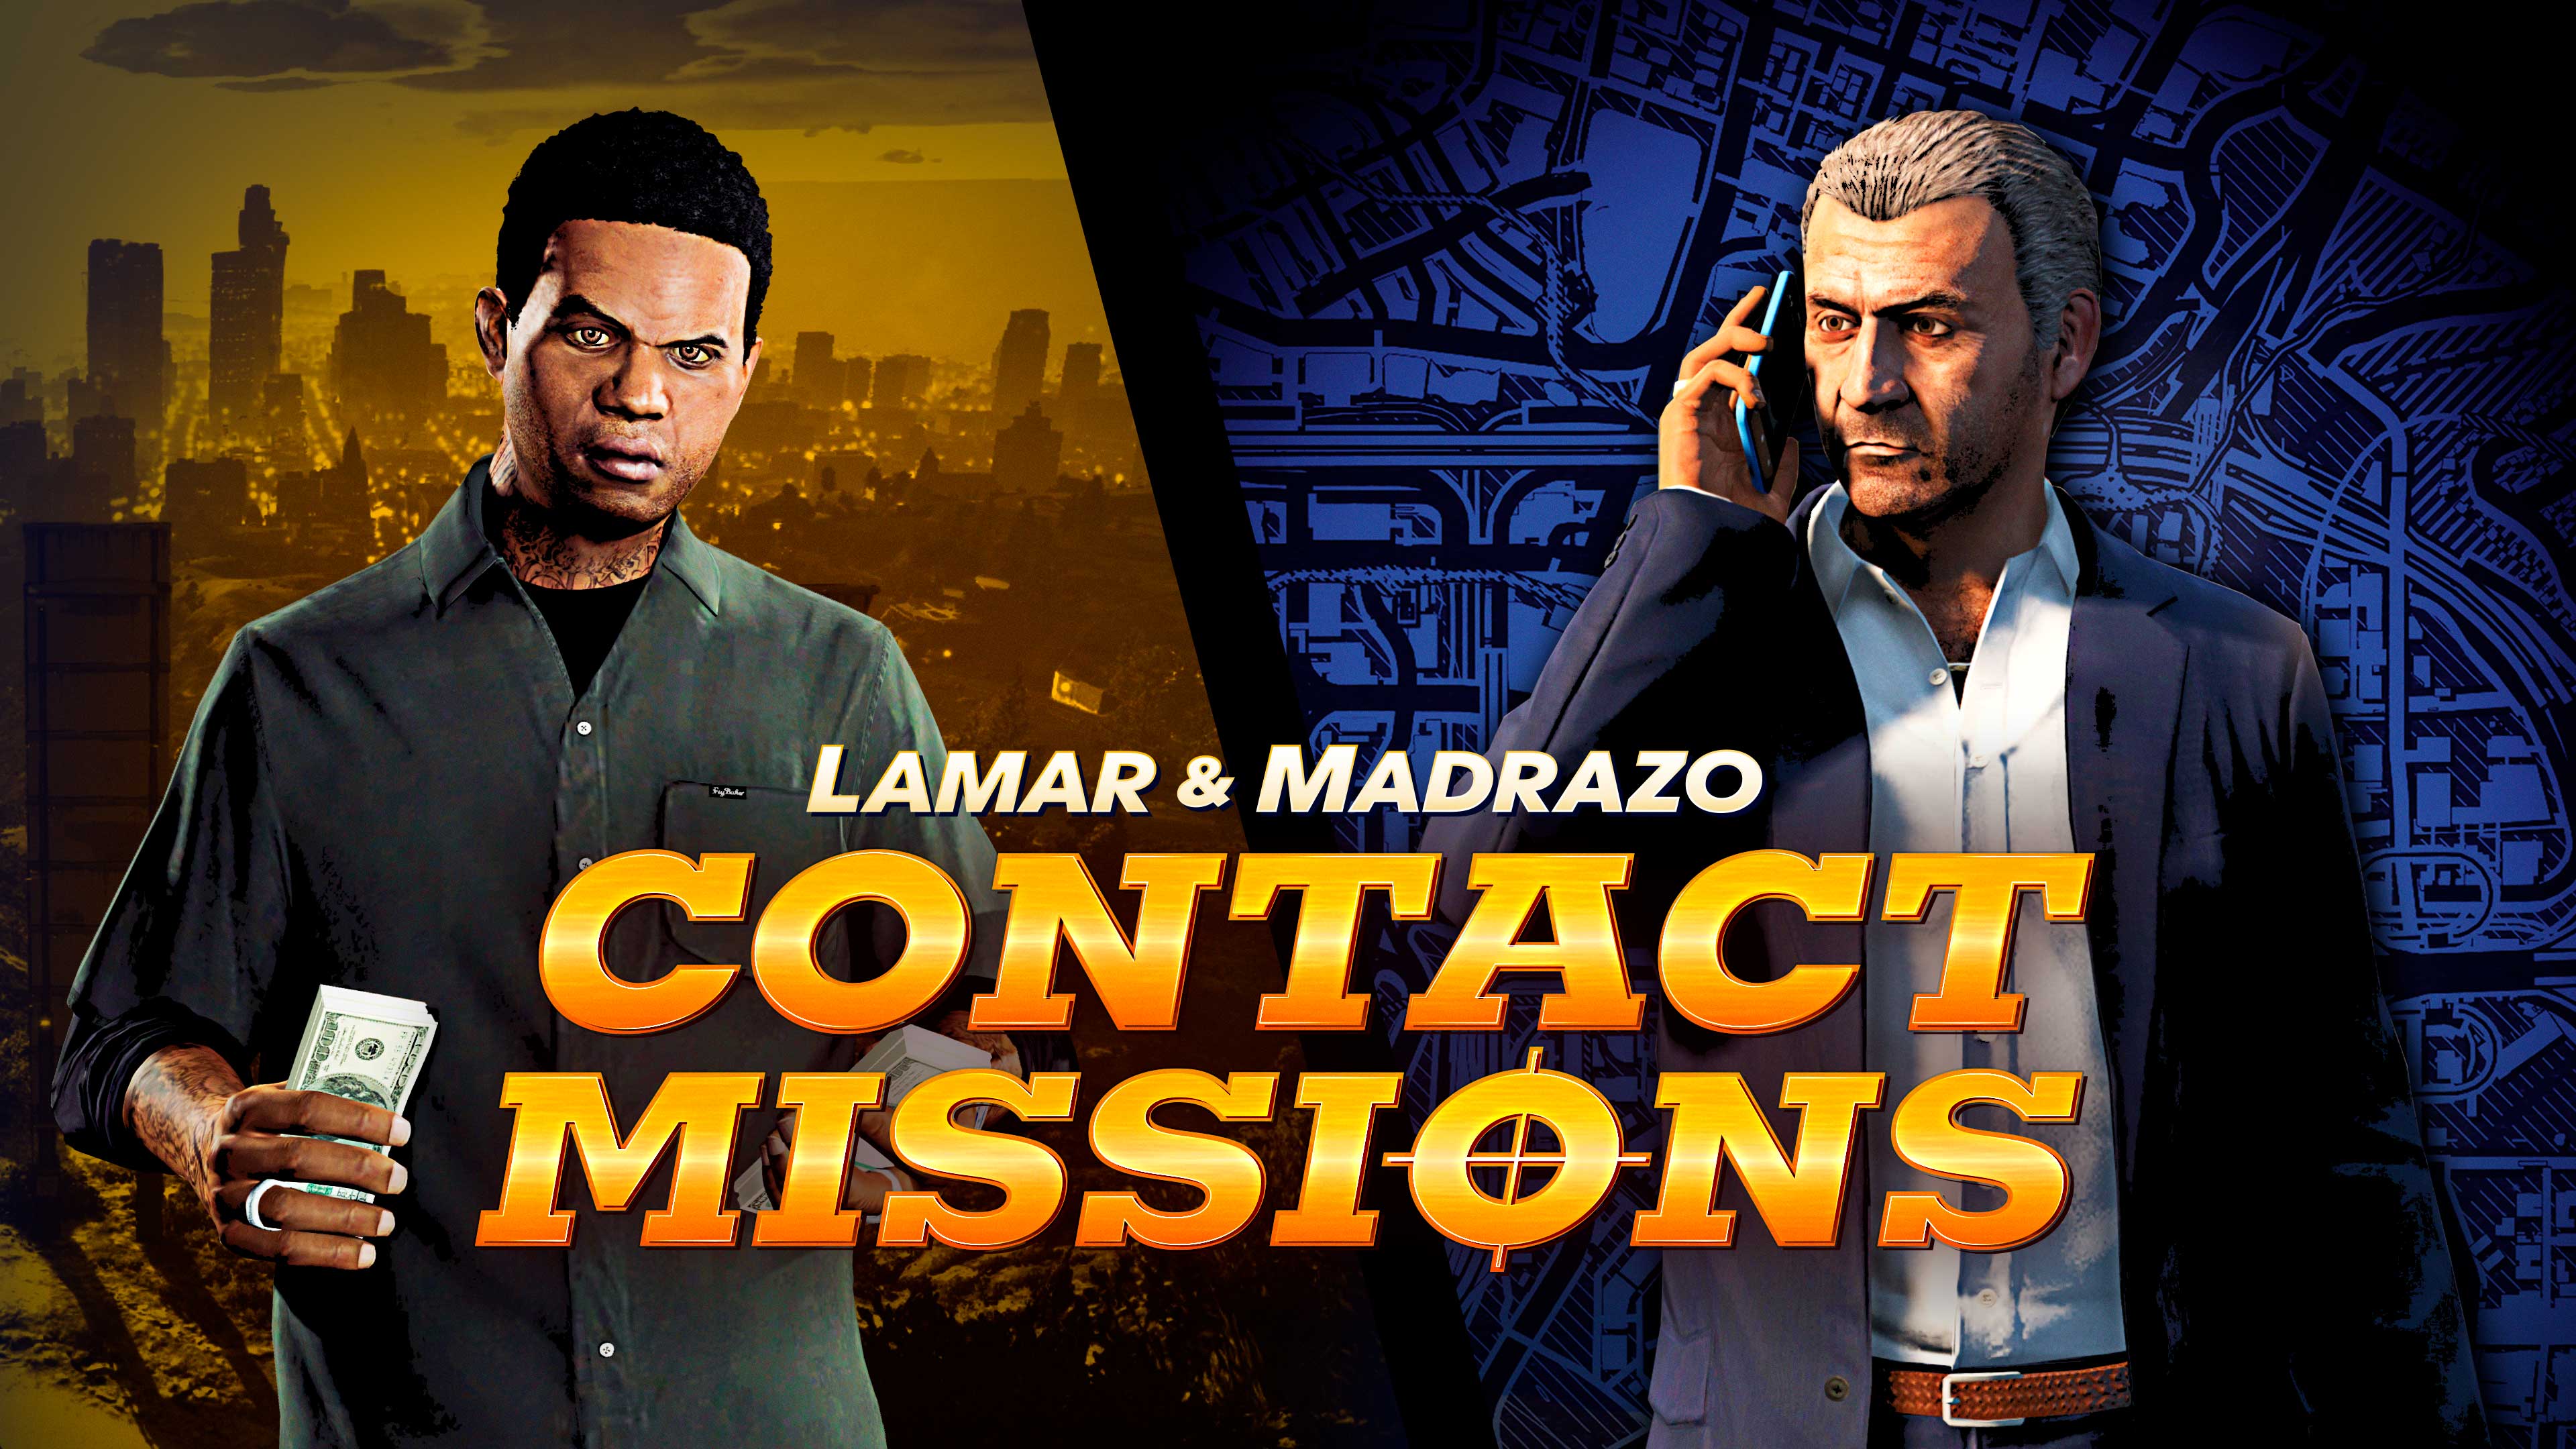 GTA Online: 3x de recompensas nas missões do Lamar e retorno de modos de  jogos